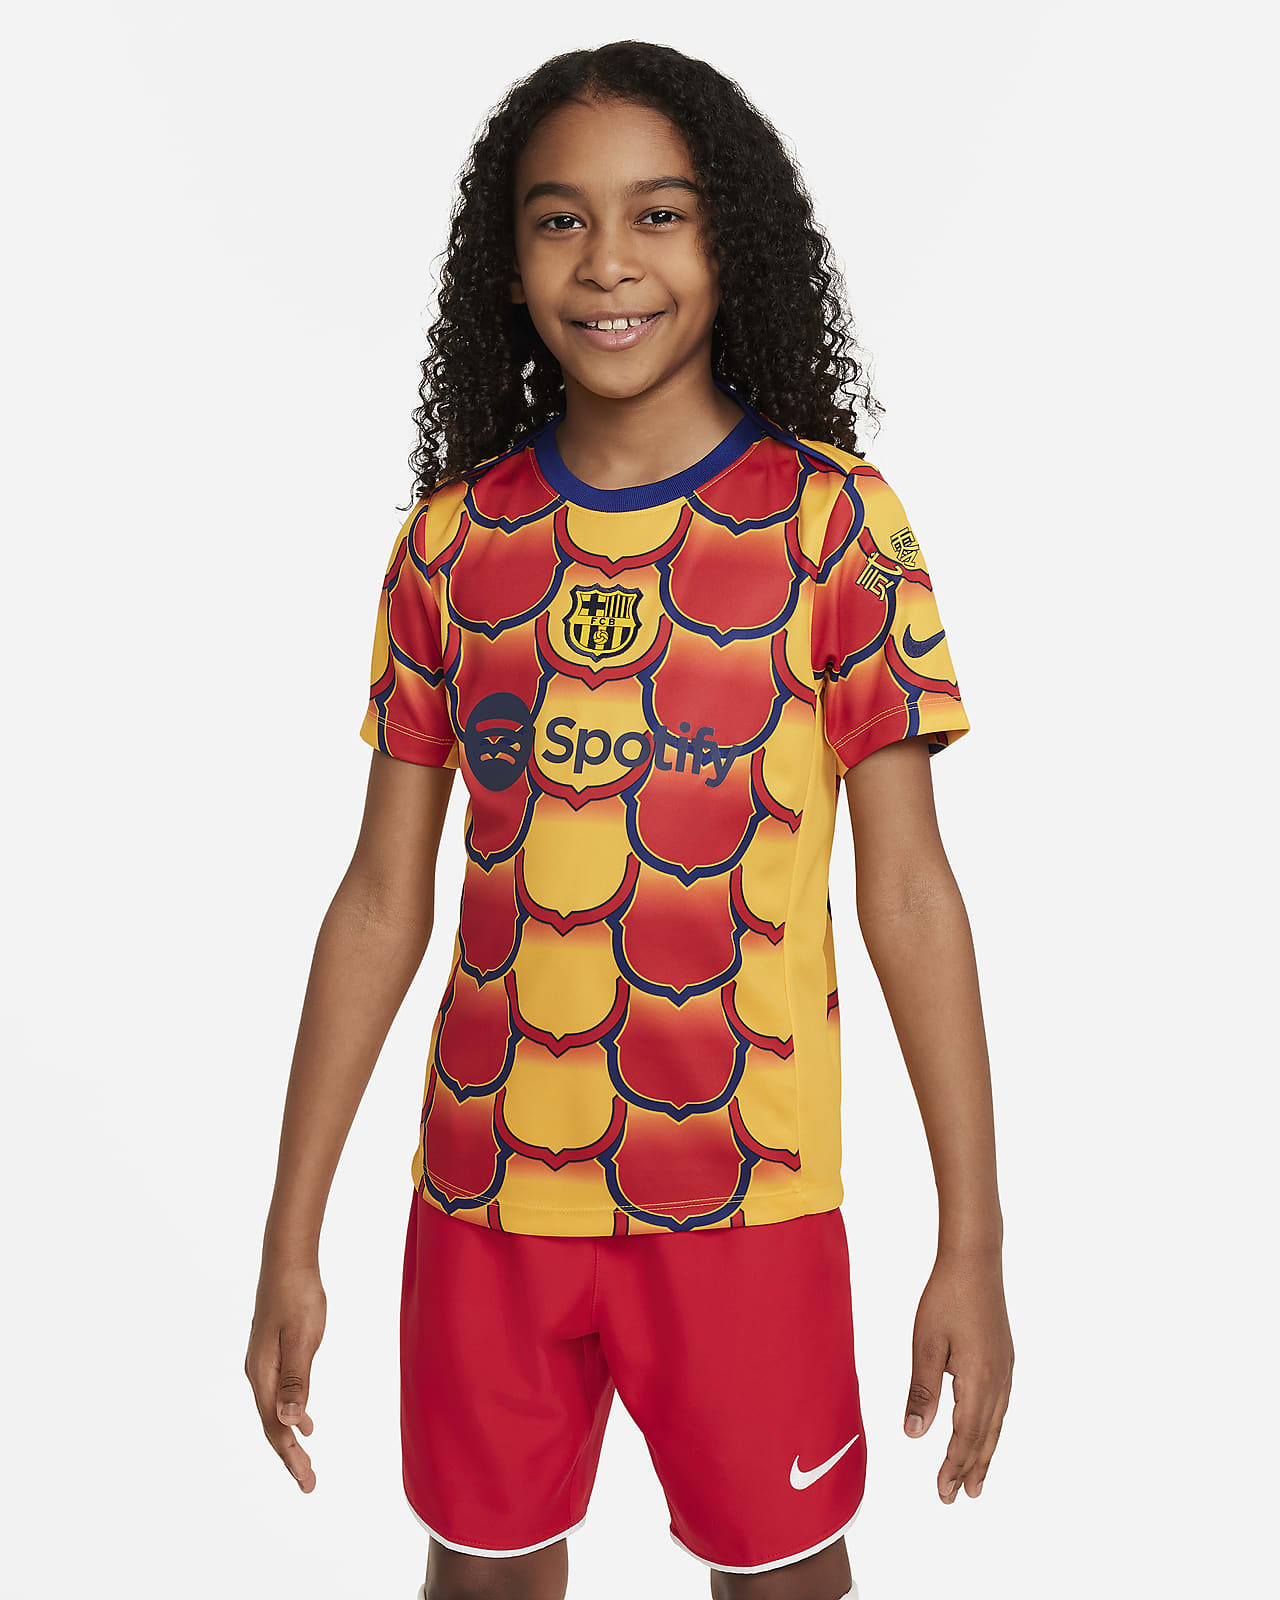 FC Barcelona Academy Pro Camiseta de fútbol para antes del partido Nike Dri-FIT - Niño/a